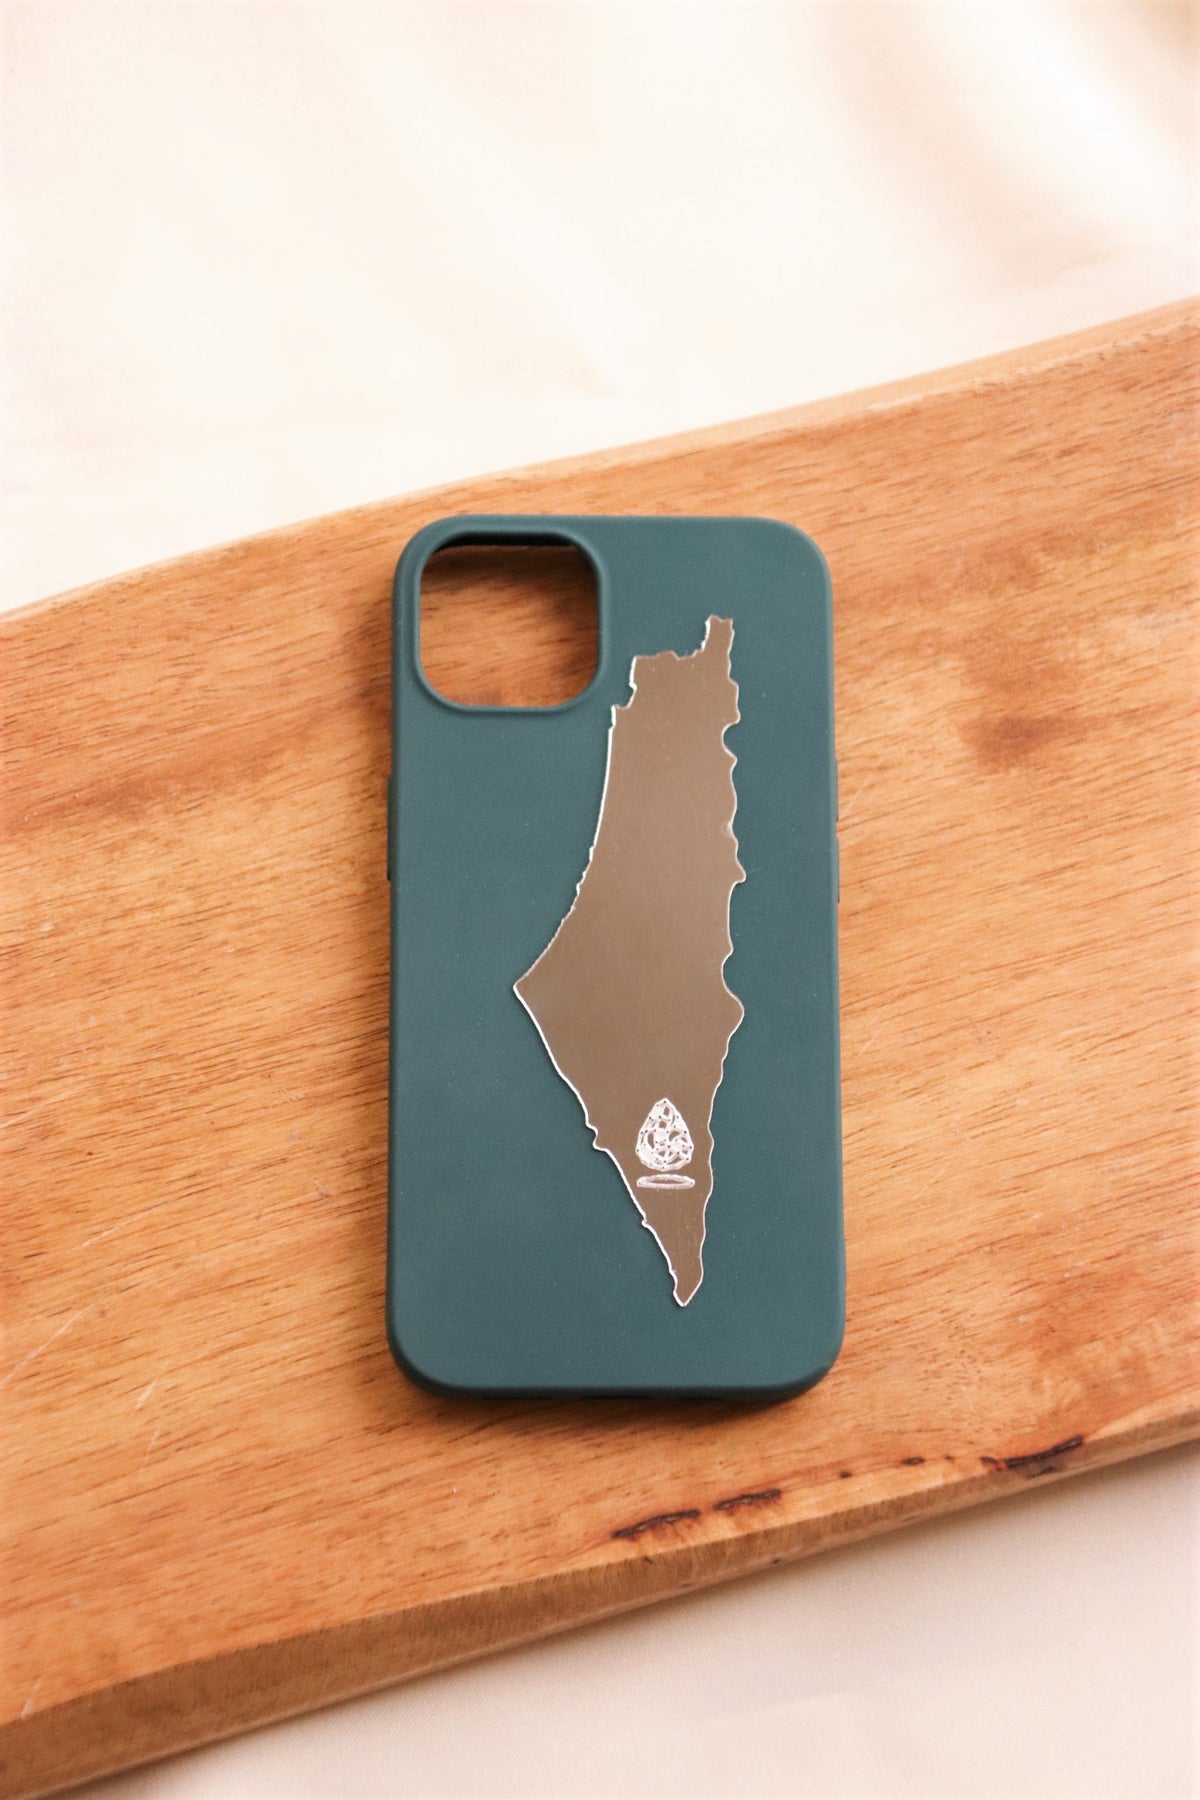 Palestine map mirror sticker